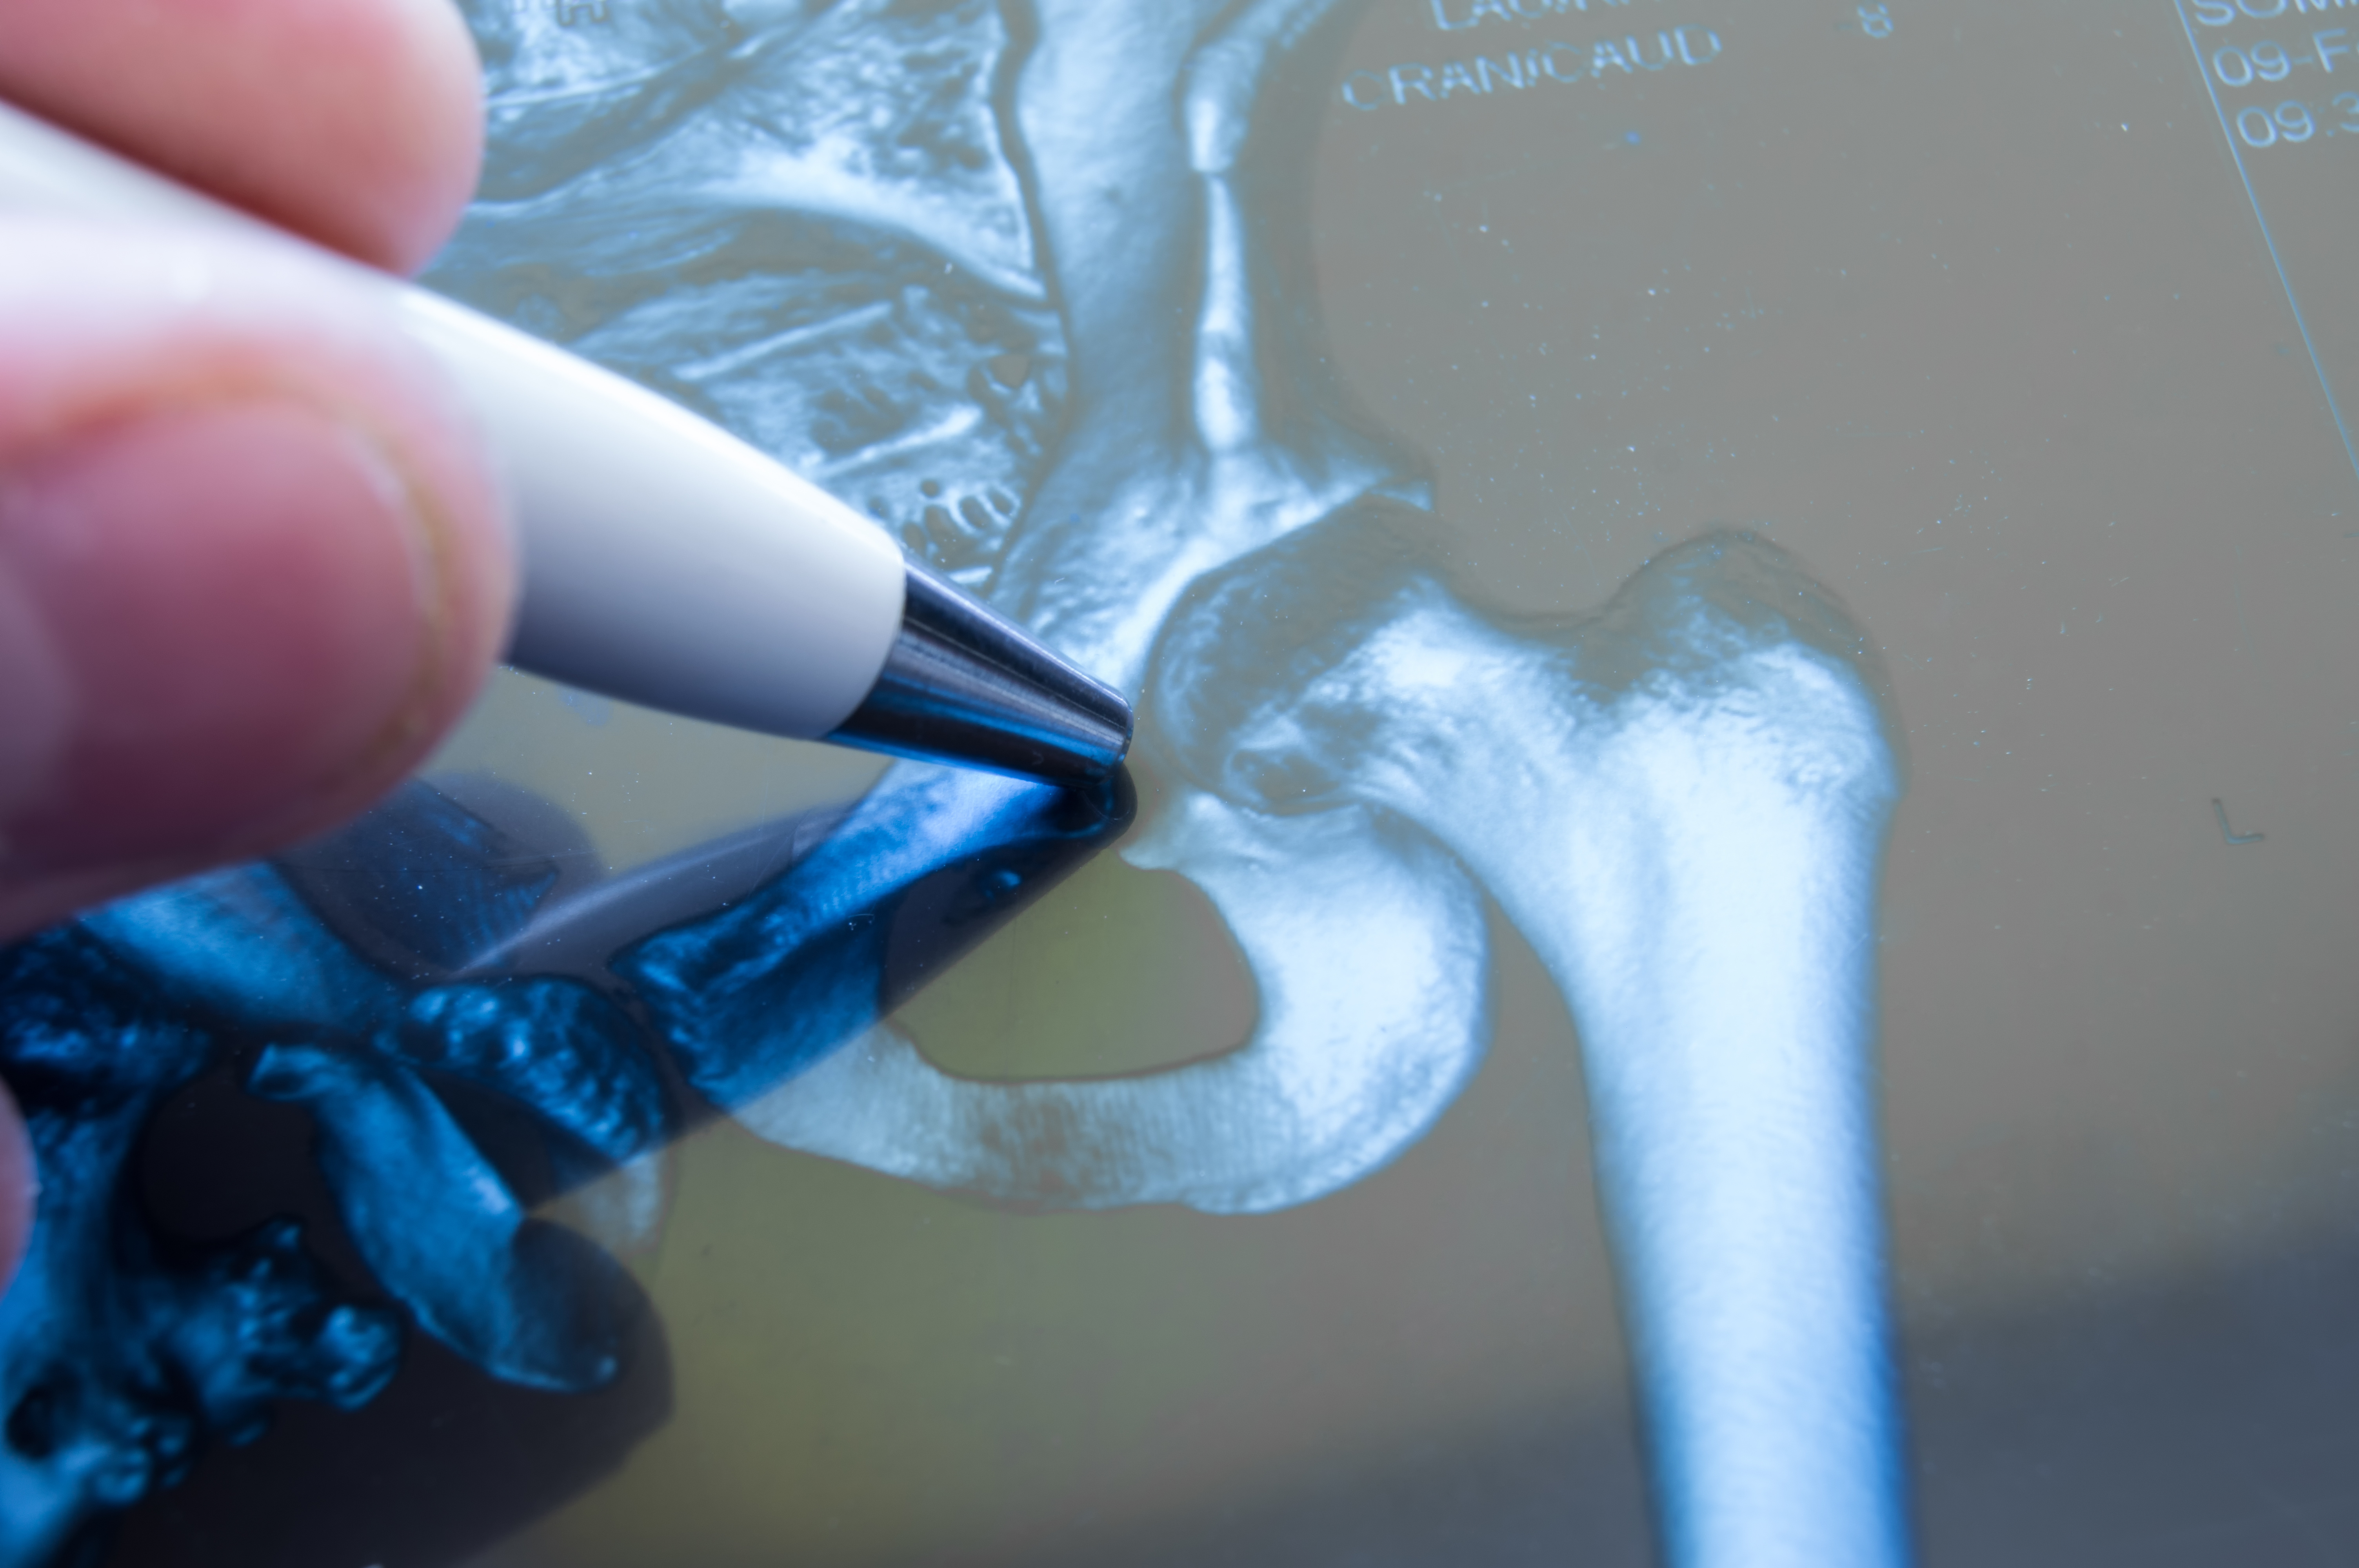 L'arthroplastie de la hanche est-elle toujours envisageable et sans danger pour les patients âgés de 90 ans ? (Visuel Adobe Stock 146660430)